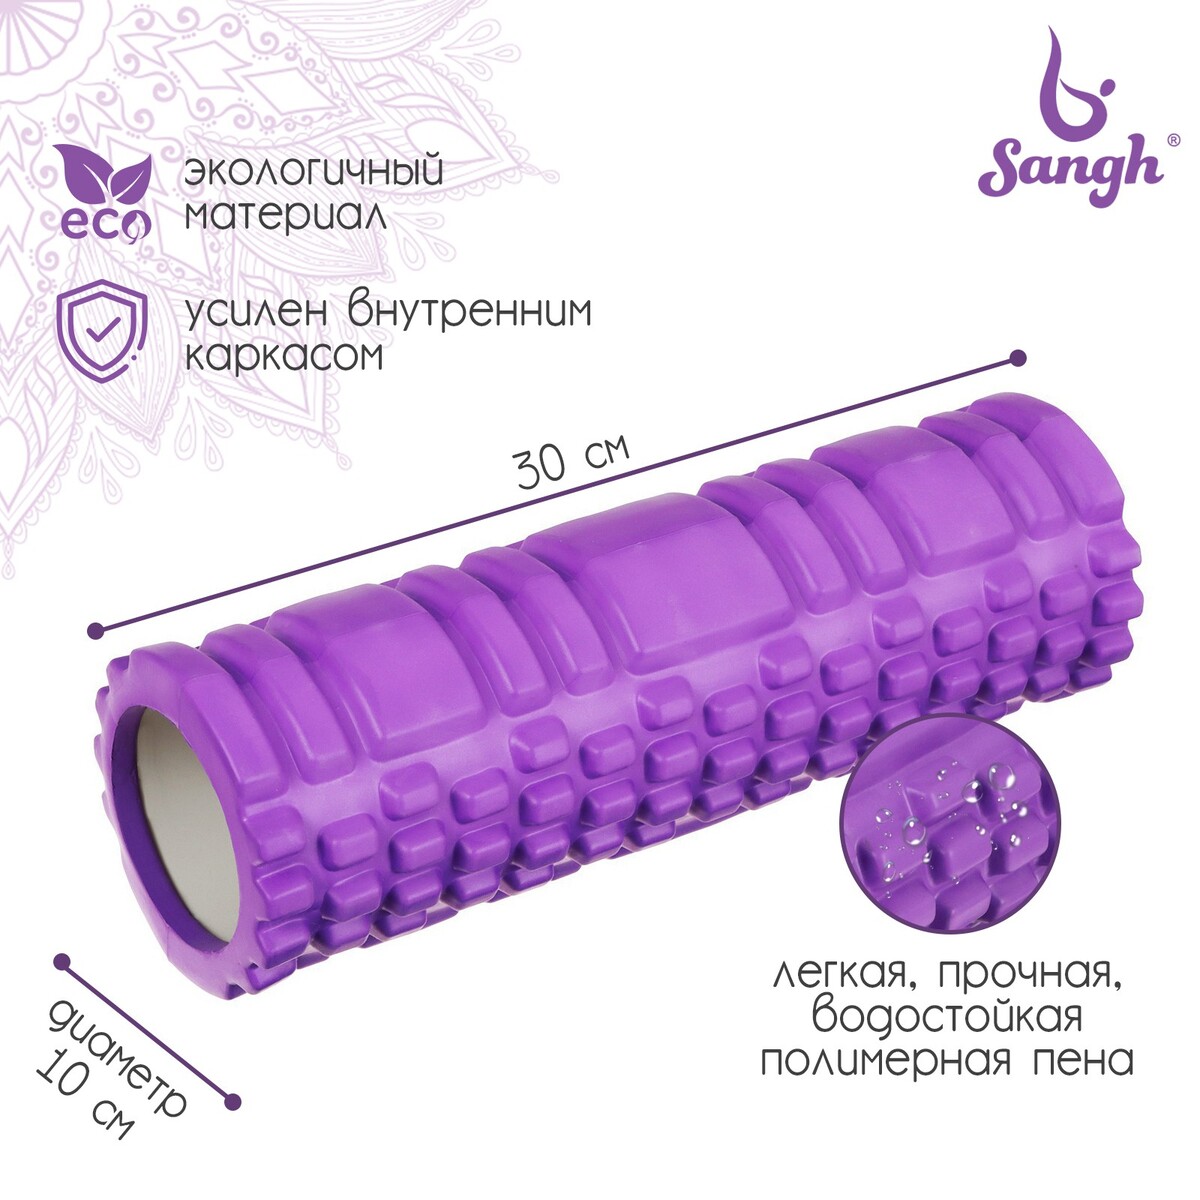 Ролик массажный sangh, 30х10 см, цвет фиолетовый ролик массажный средняя жесткость pro 32 5x12 5 cм star fit fa 507 мятный серый